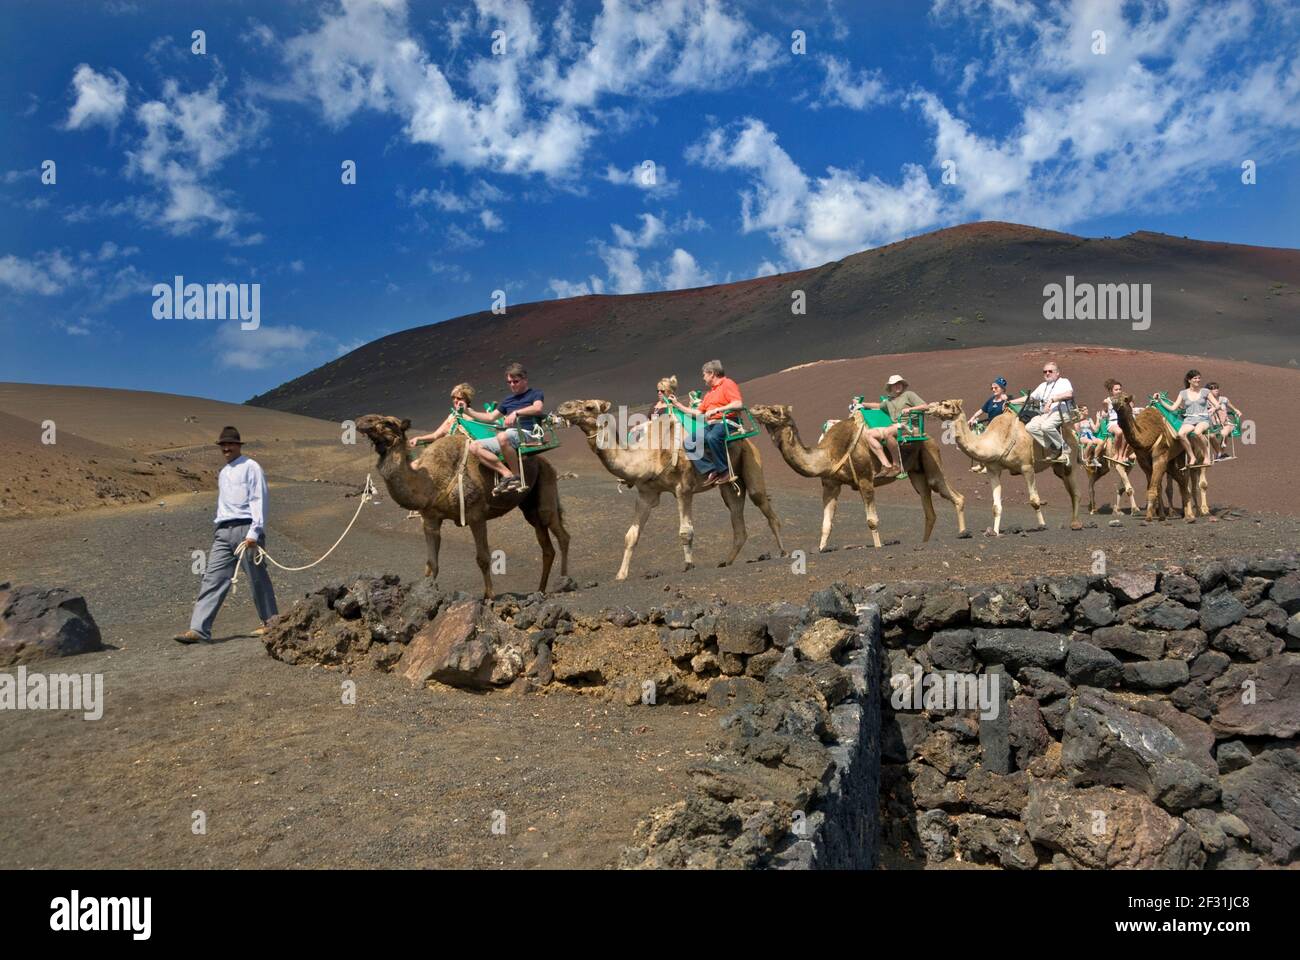 LANZAROTE TIMANFAYA train Camel trek trekking avec les touristes dans le Parc National de Timanfaya Lanzarote Iles Canaries Espagne Banque D'Images